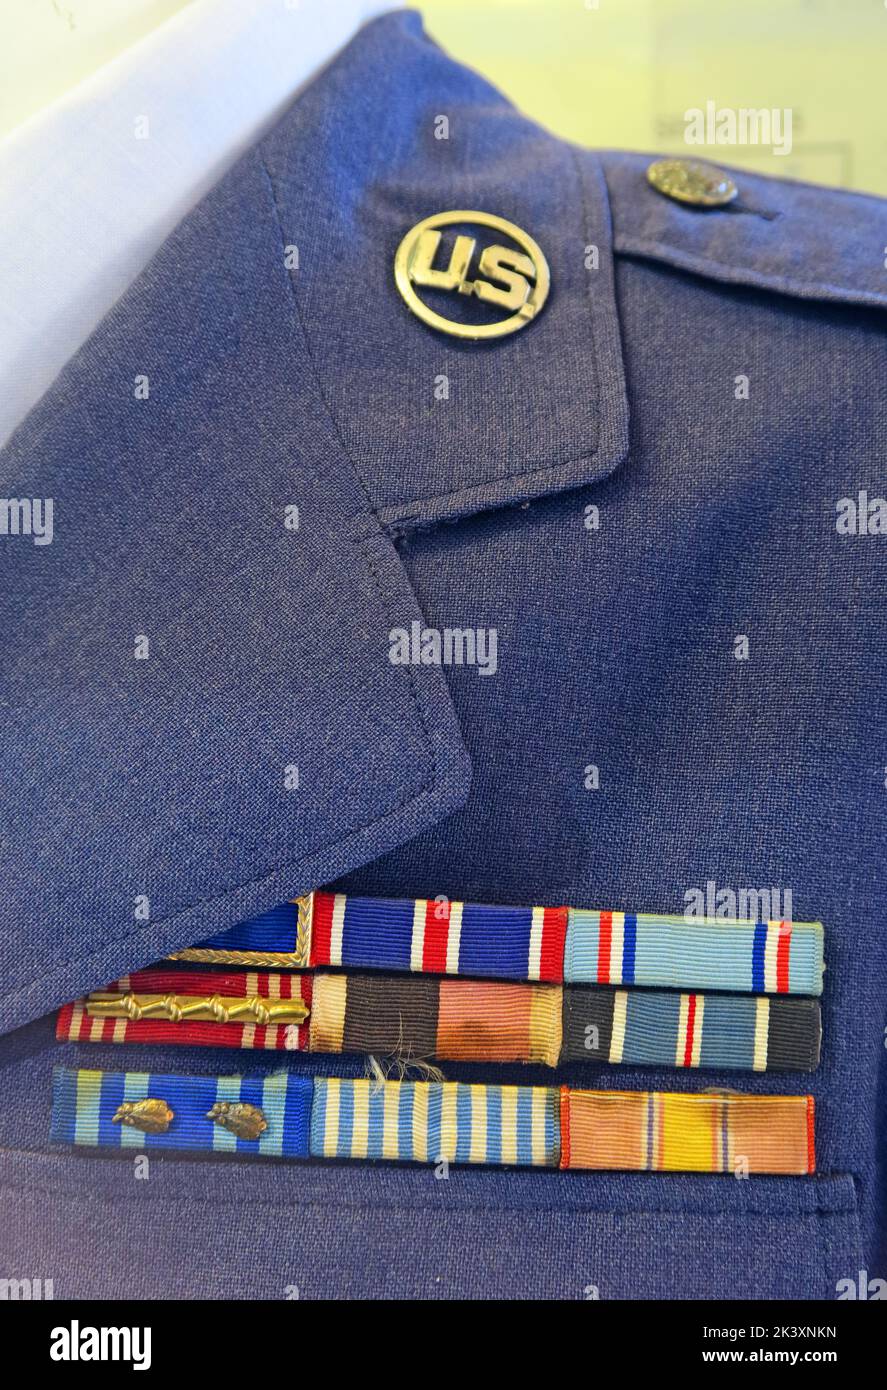 US air force uniform Jacket, showing rank stationed at RAF Burtonwood, Warrington , Cheshire, England, UK, WA5 9YZ Stock Photo